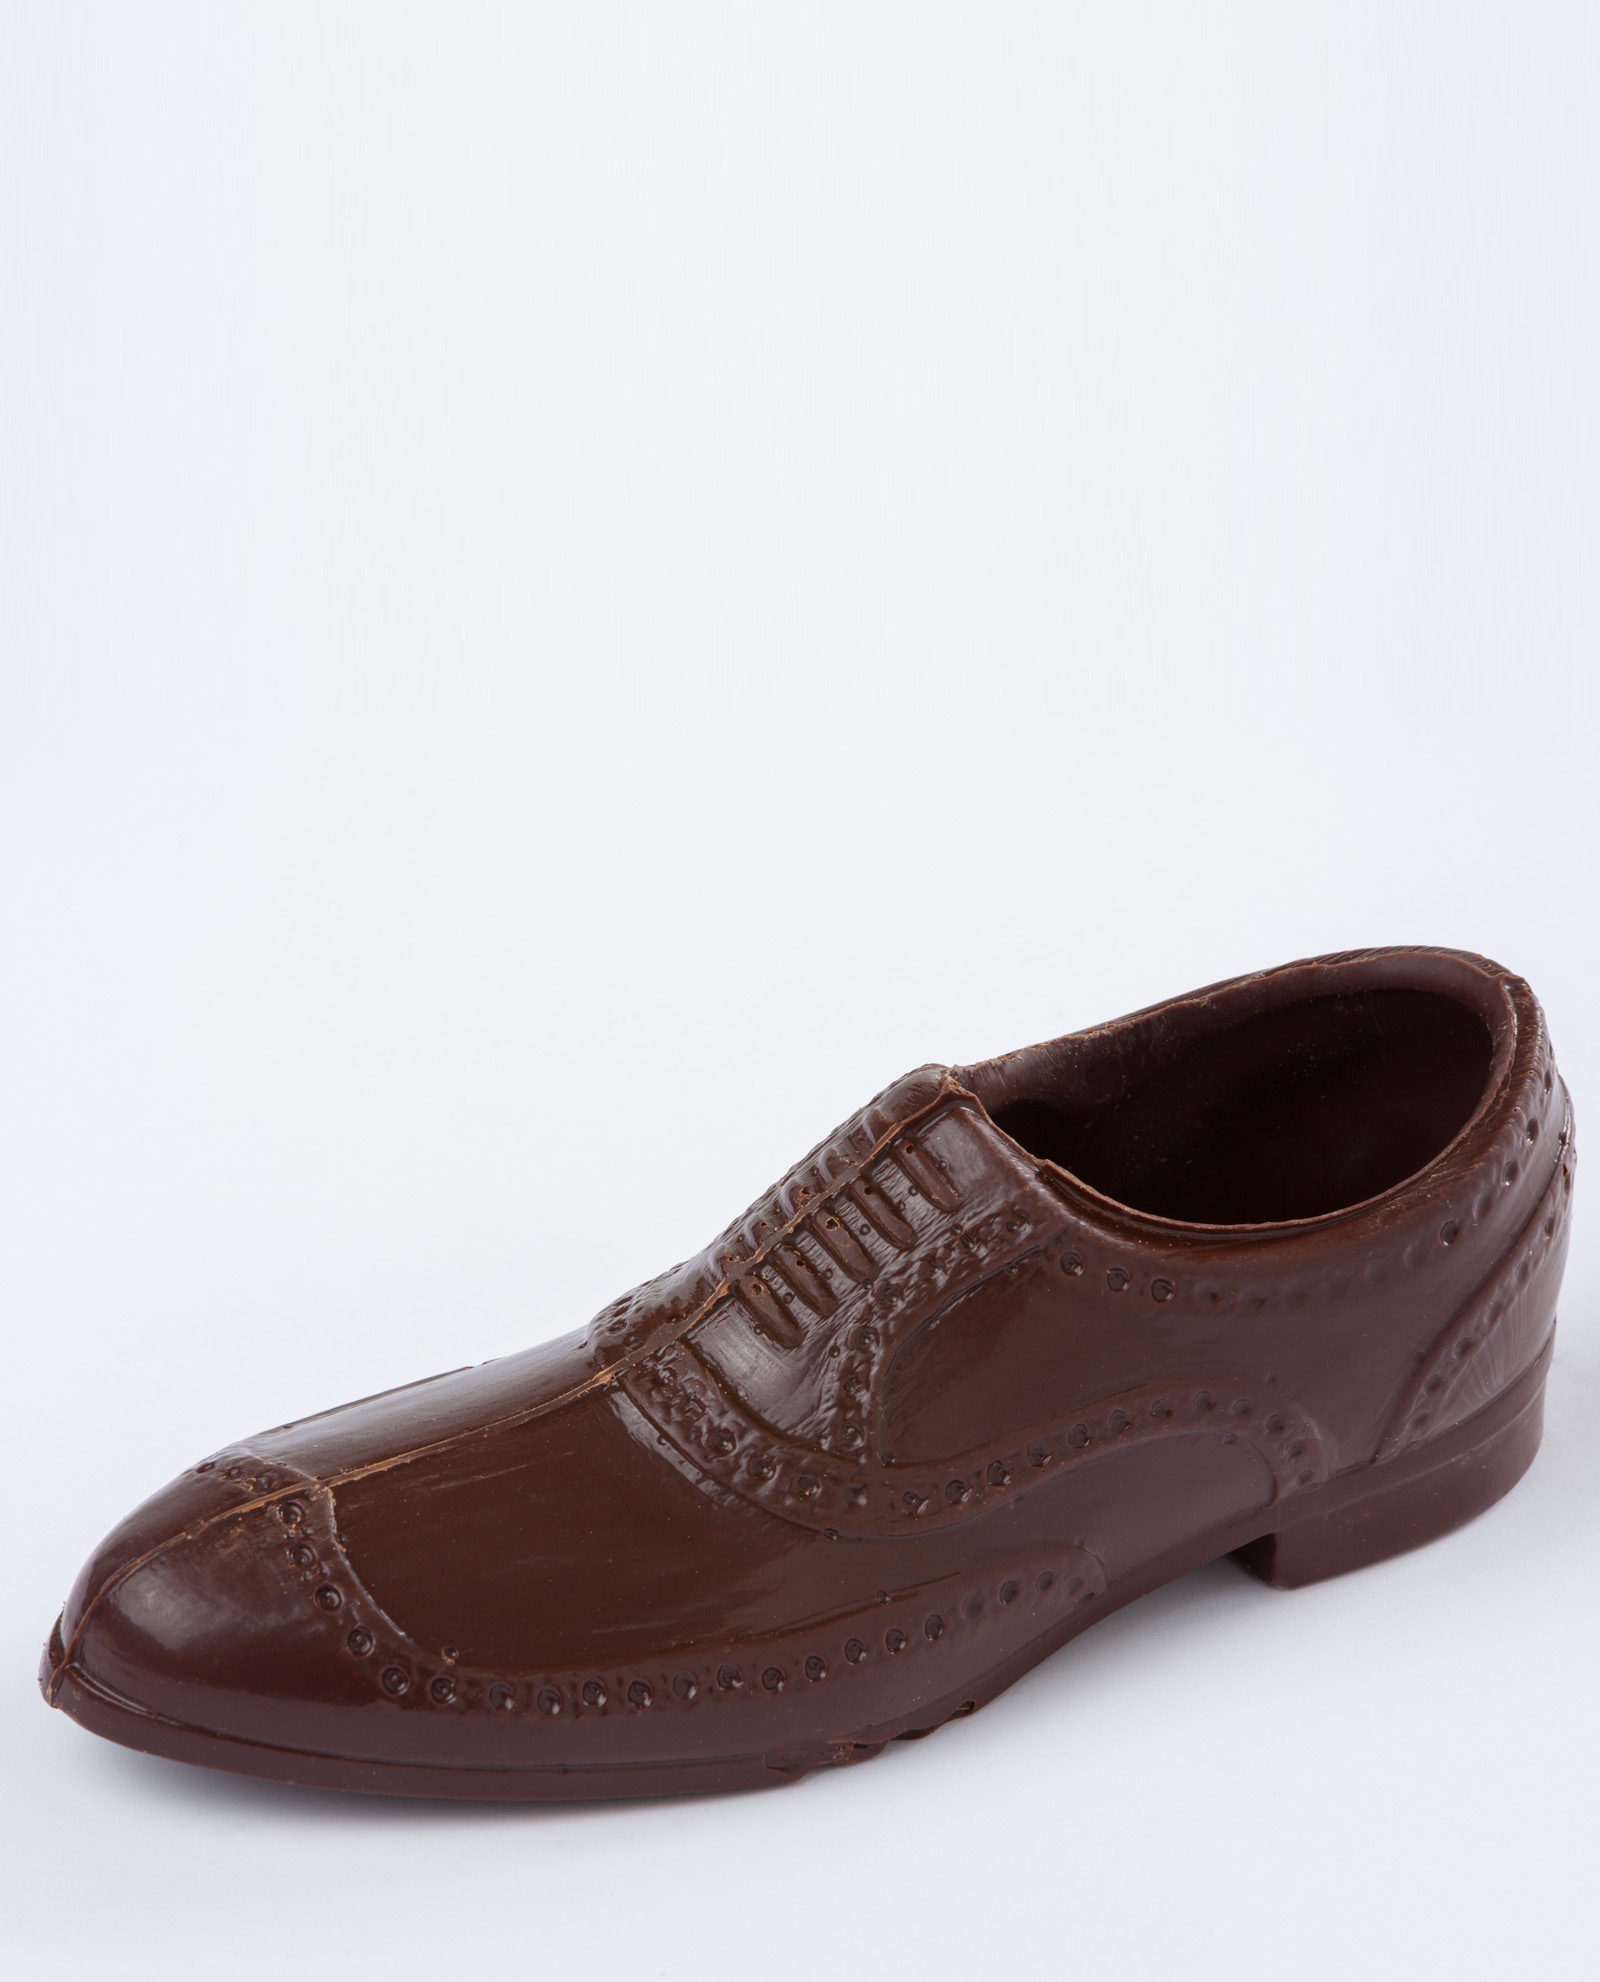 zapato del chocolate, diseñado para el Día del Padre